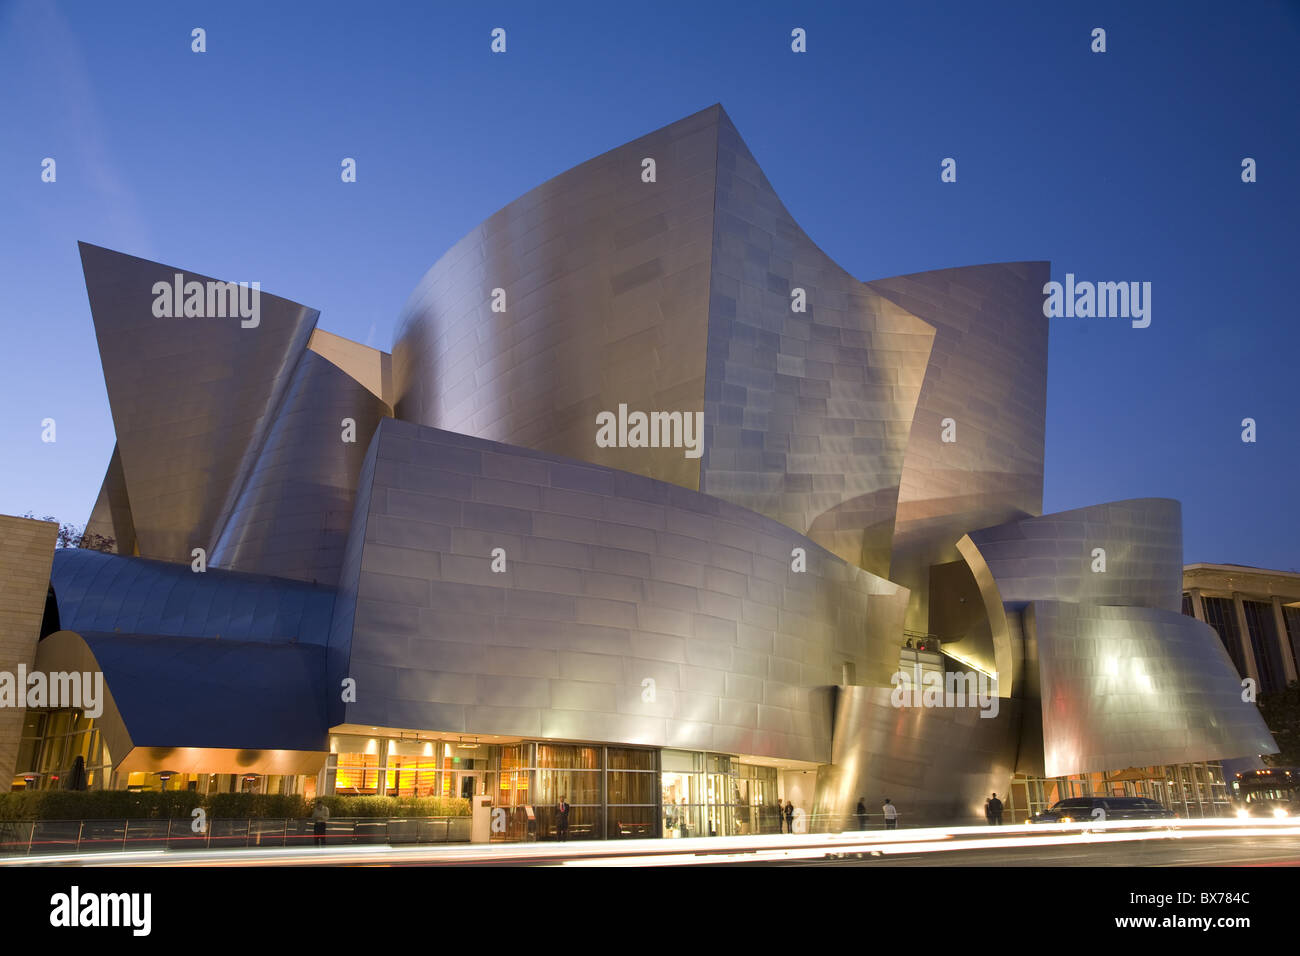 Disney Concert Hall, conçu par Frank Gehry, Los Angeles, Californie, États-Unis d'Amérique, Amérique du Nord Banque D'Images